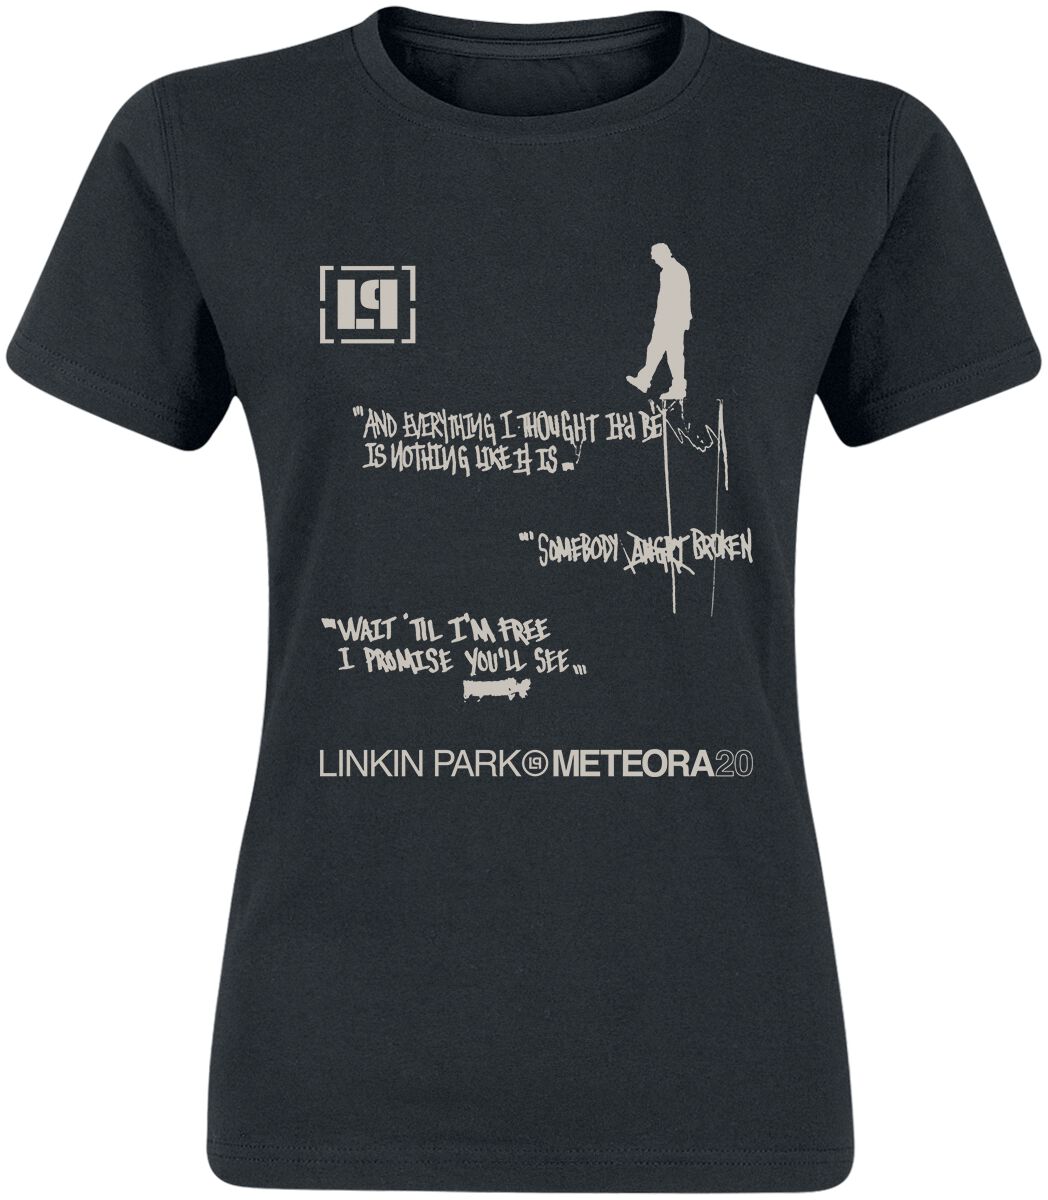 Linkin Park T-Shirt - Meteora 20th Anniversary - M bis XXL - für Damen - Größe XL - schwarz  - EMP exklusives Merchandise!